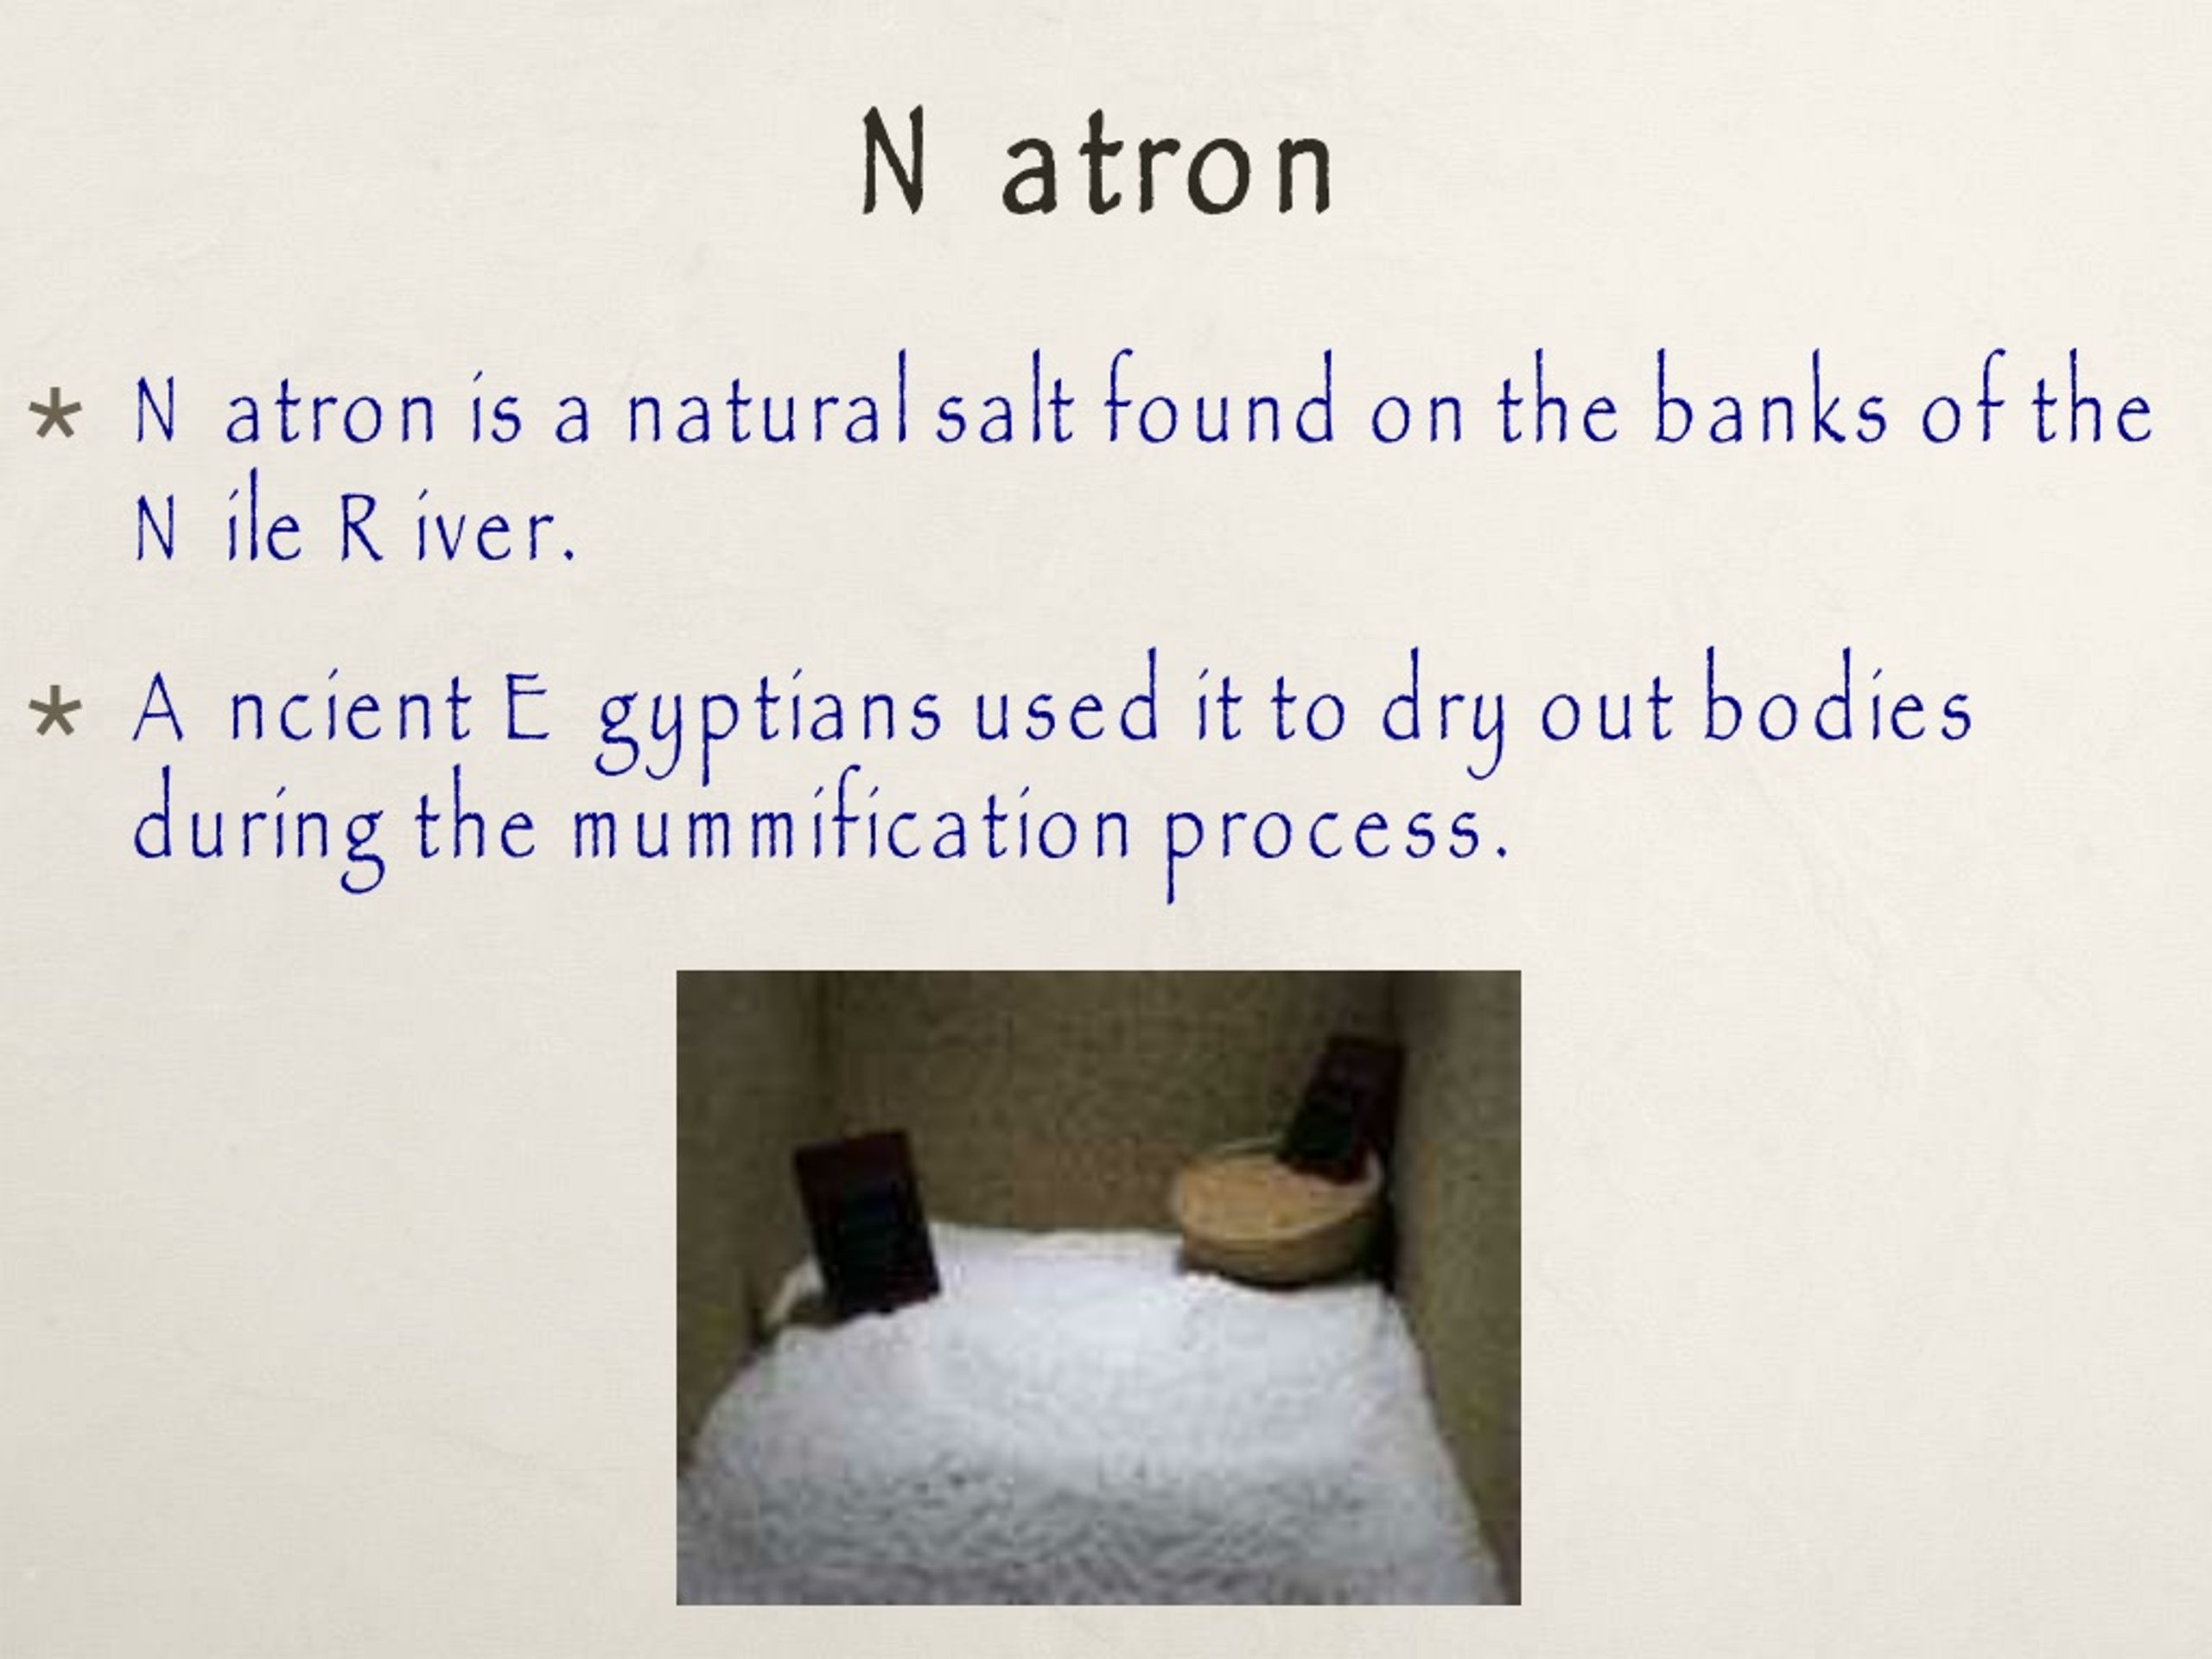 natron salt mummification